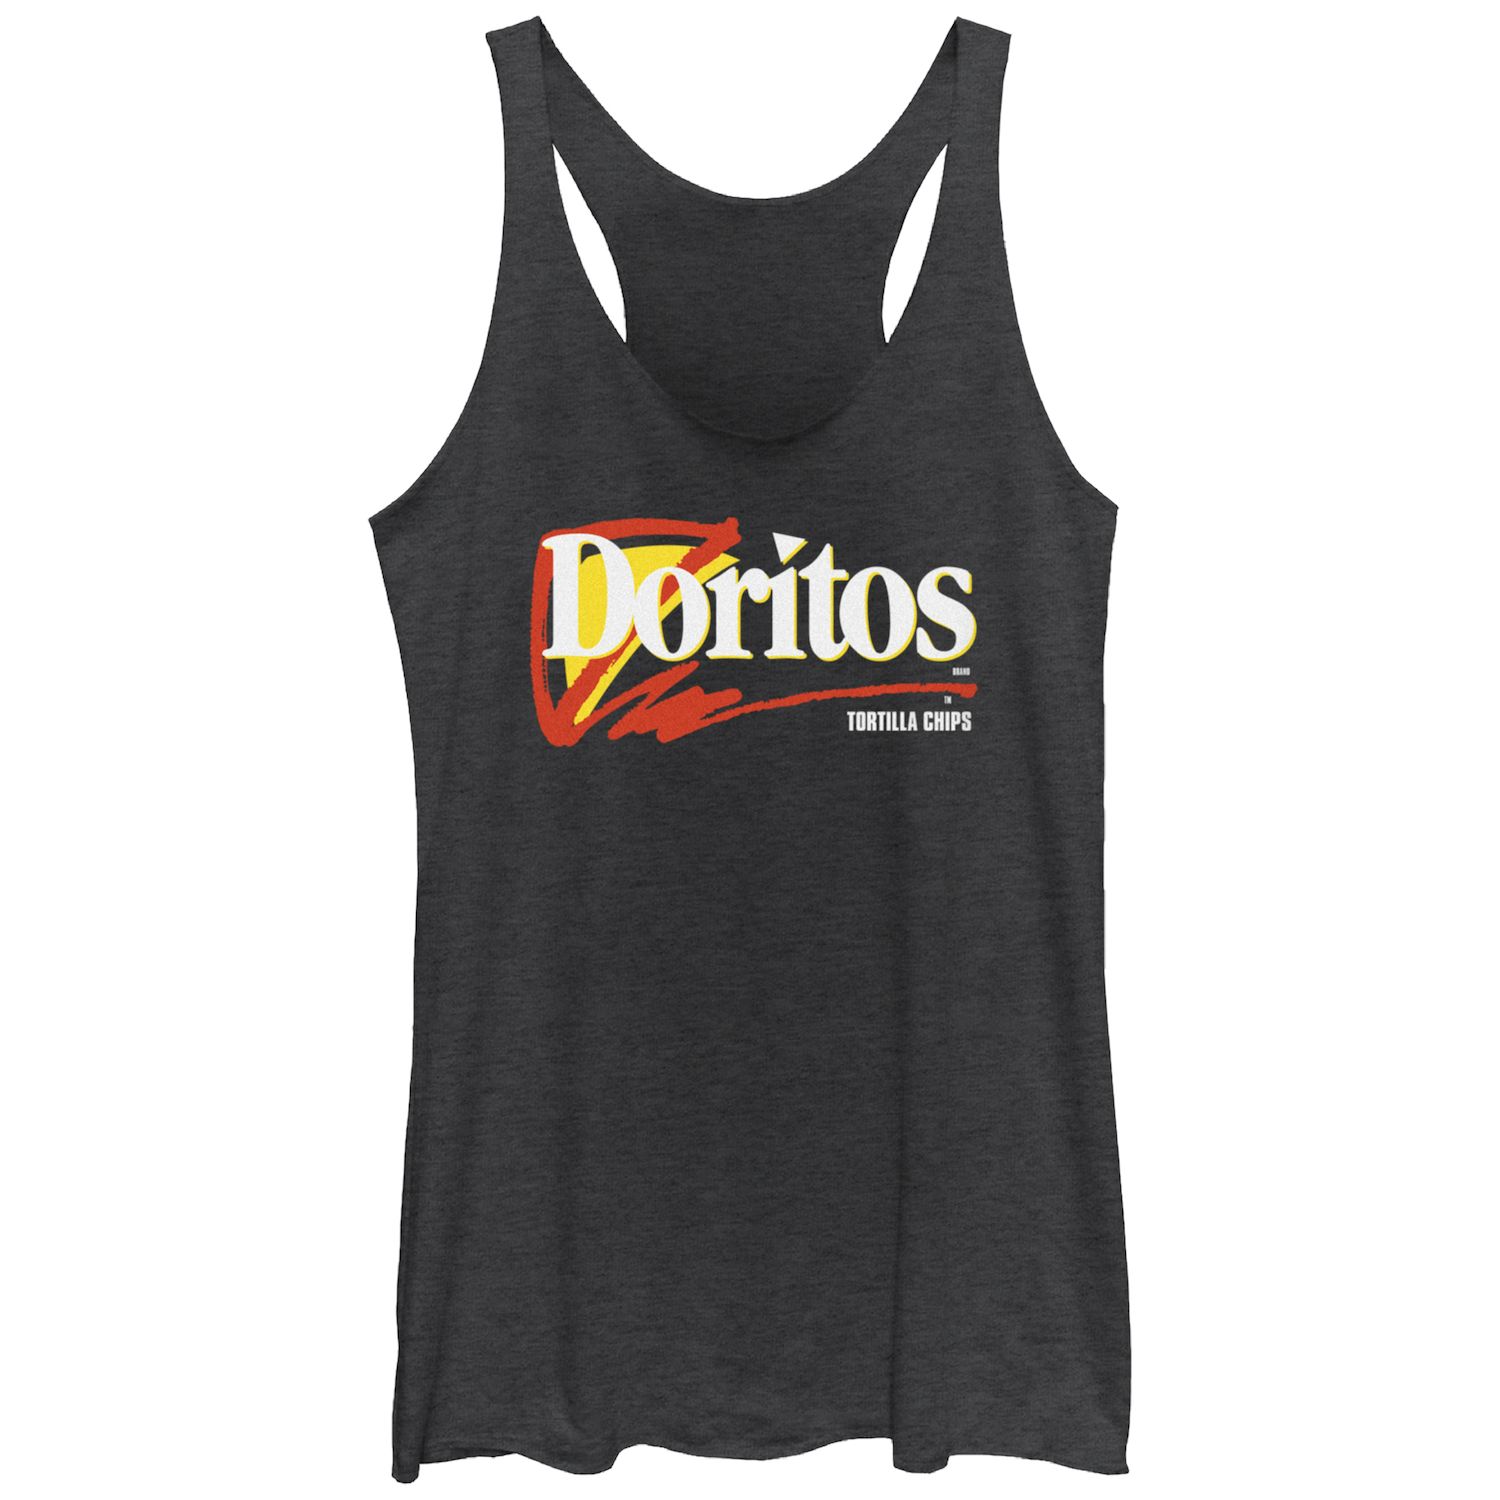 Майка-борцовка с логотипом Doritos Tortilla Chips для юниоров Doritos детская футболка больших размеров doritos sunset в стиле 80 х с v образным вырезом и графикой doritos